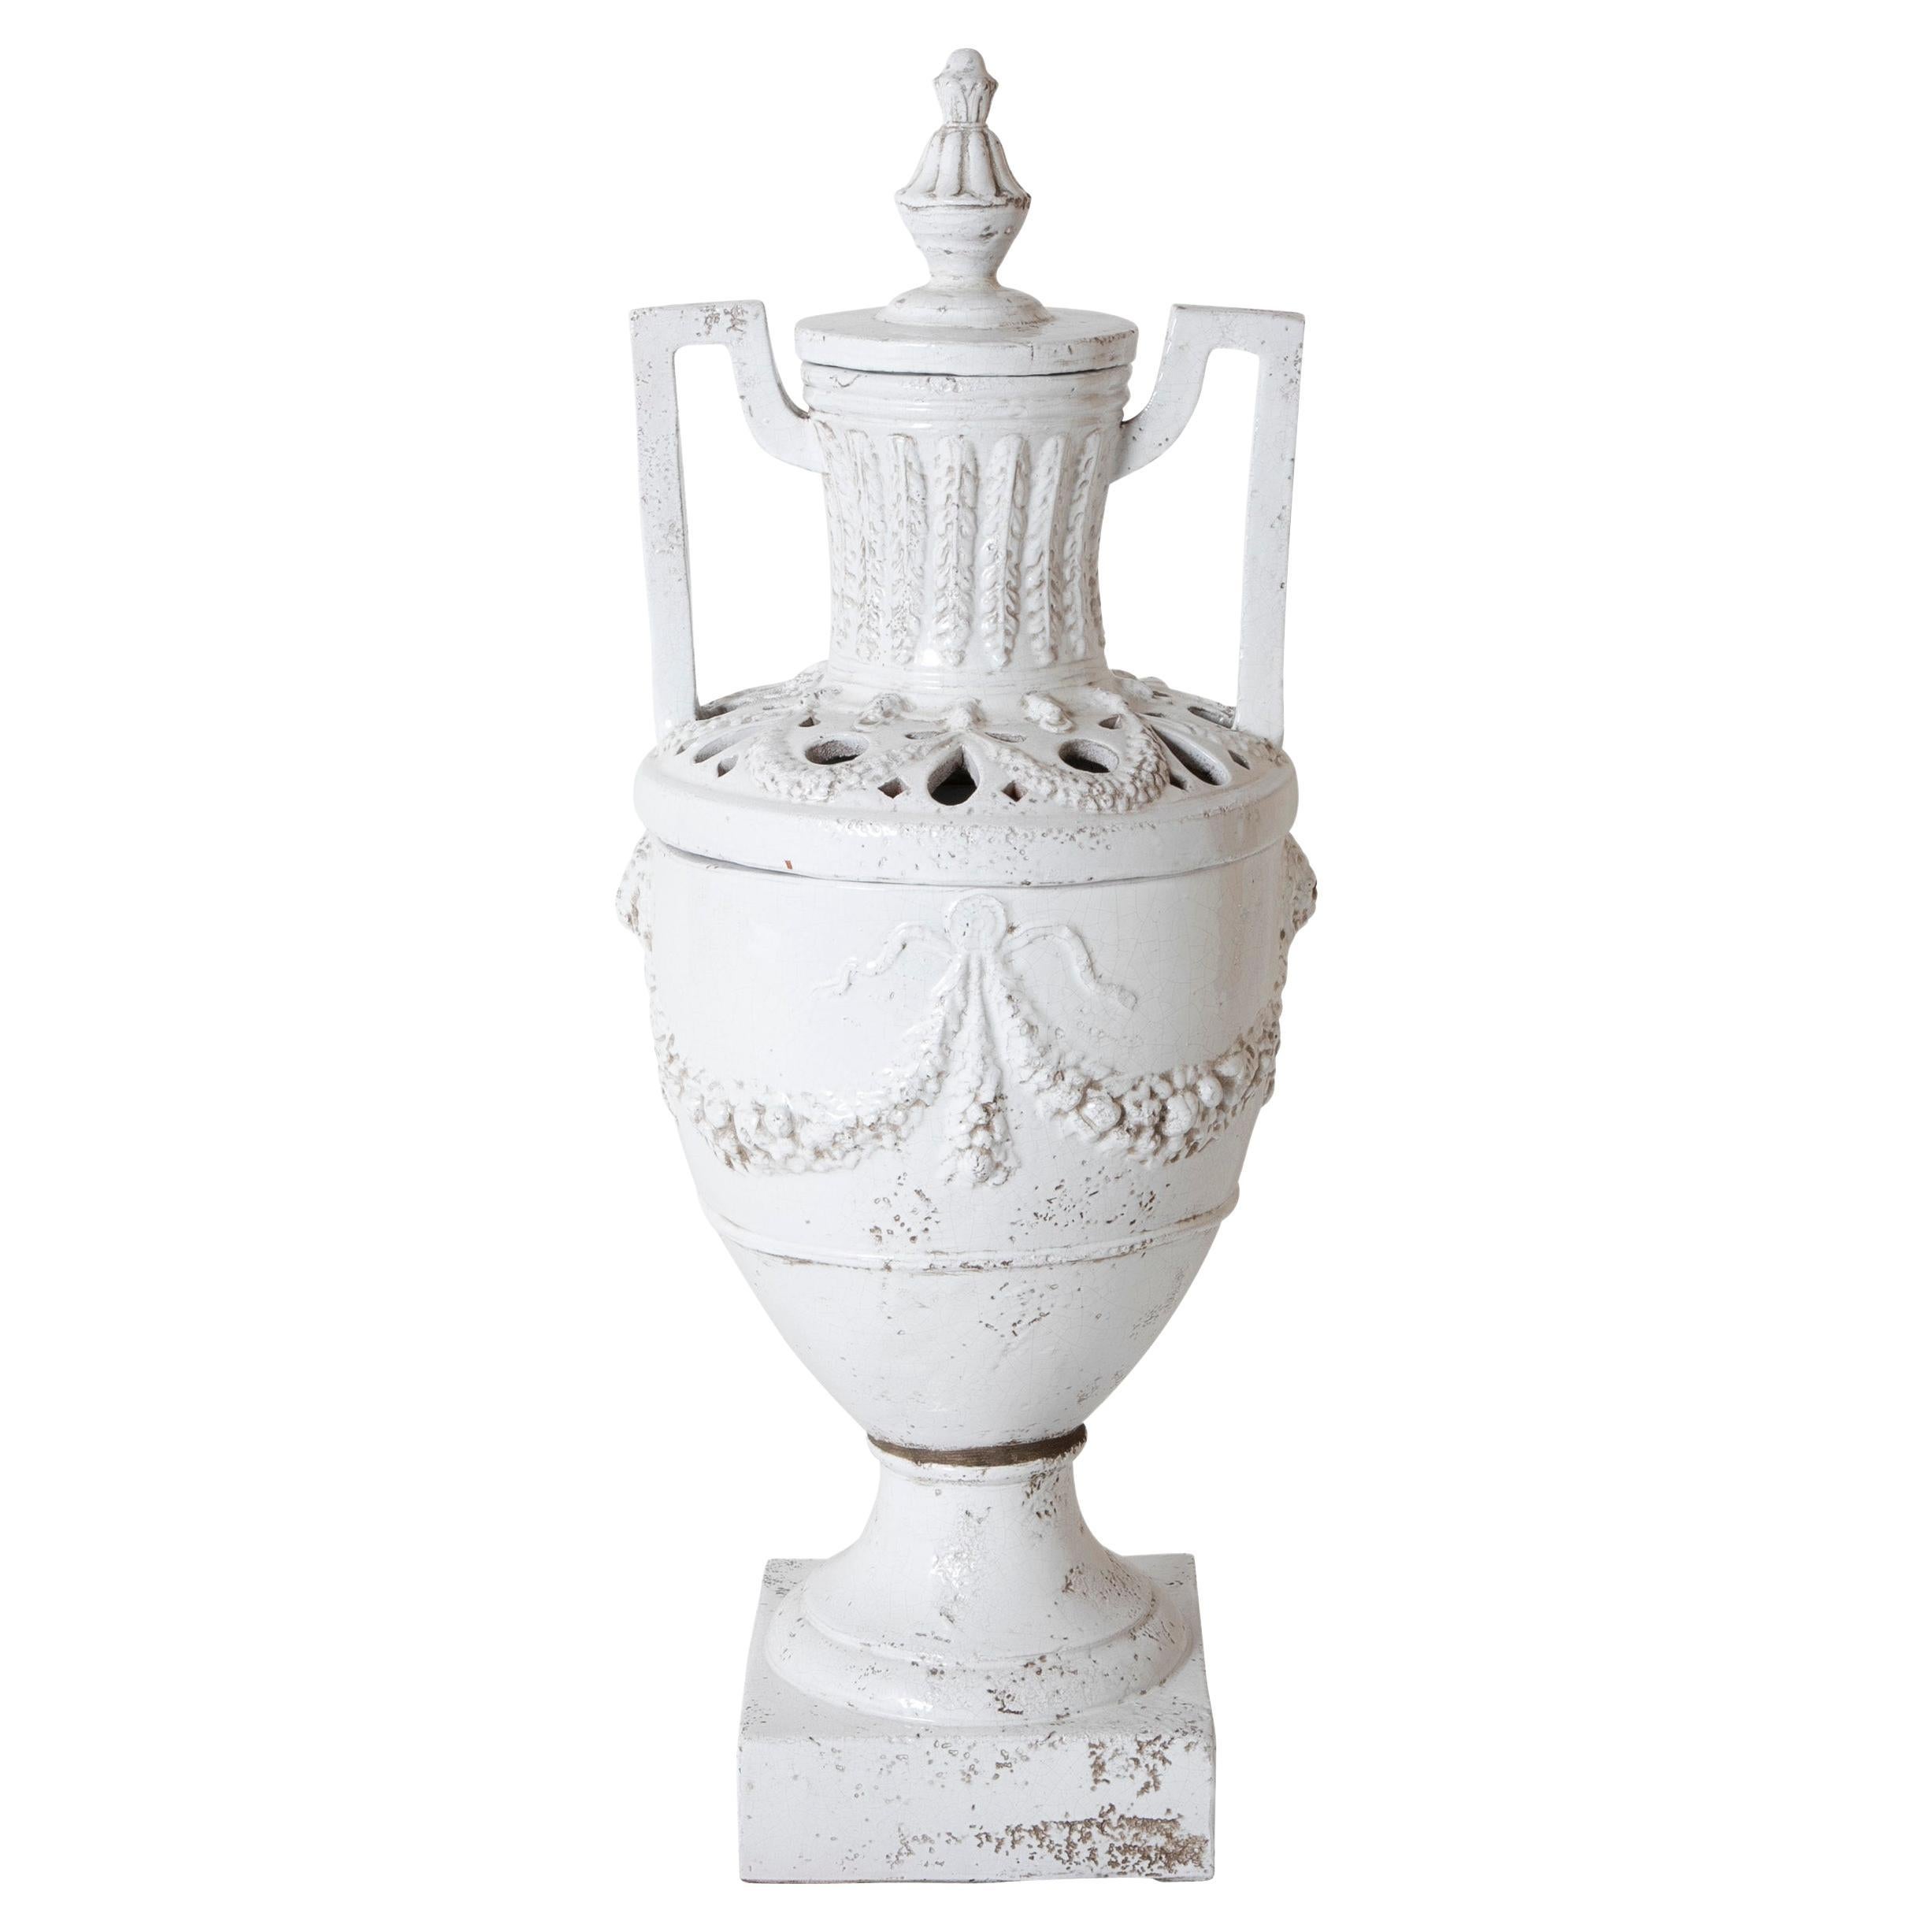 Urne néoclassique italienne en céramique émaillée blanche, grande taille